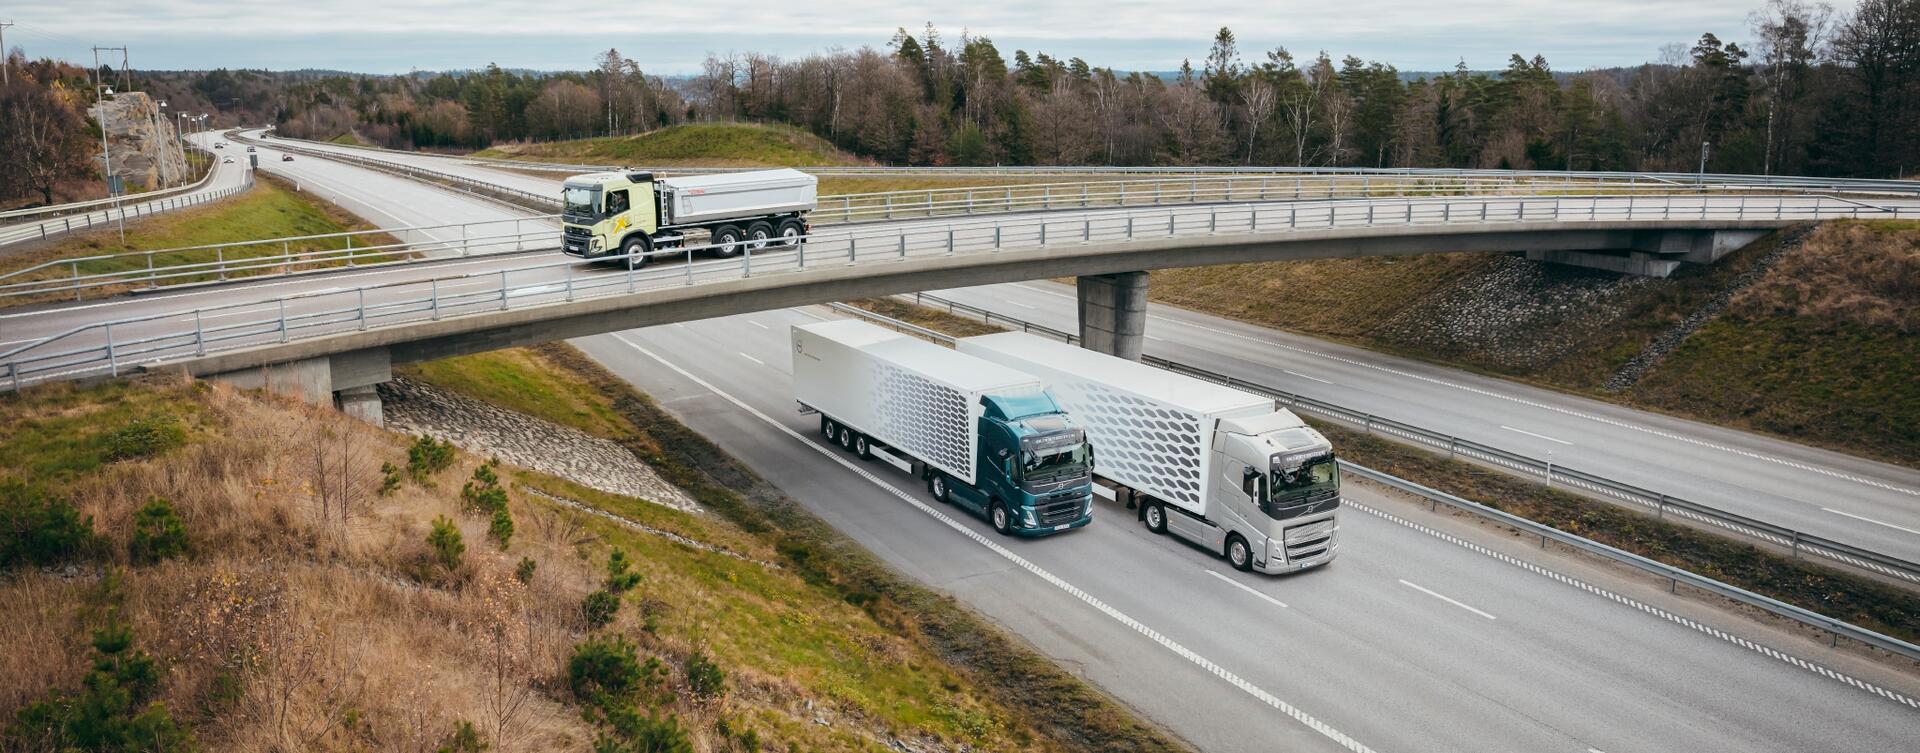 Volvo-trucks nu nog zuiniger en comfortabeler